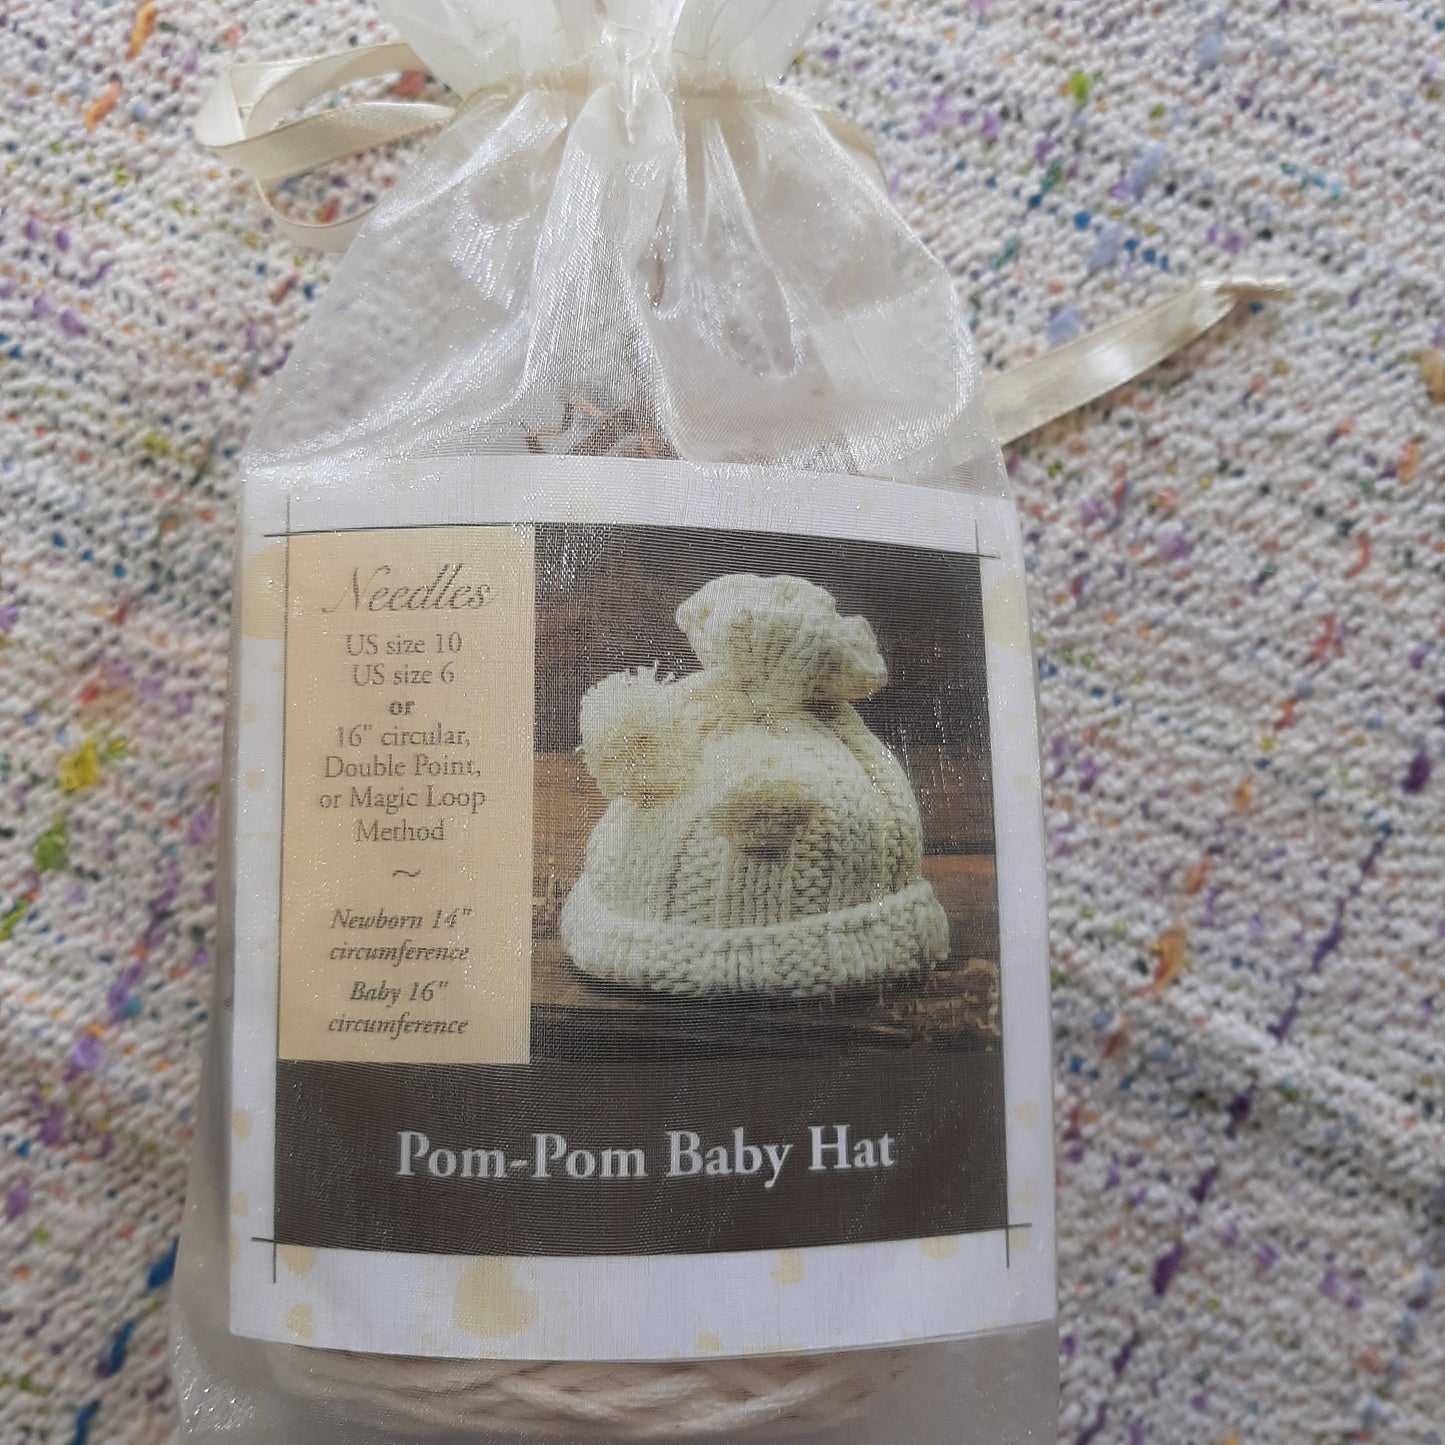 Appalachian Baby - Pom-Pom Baby Hat